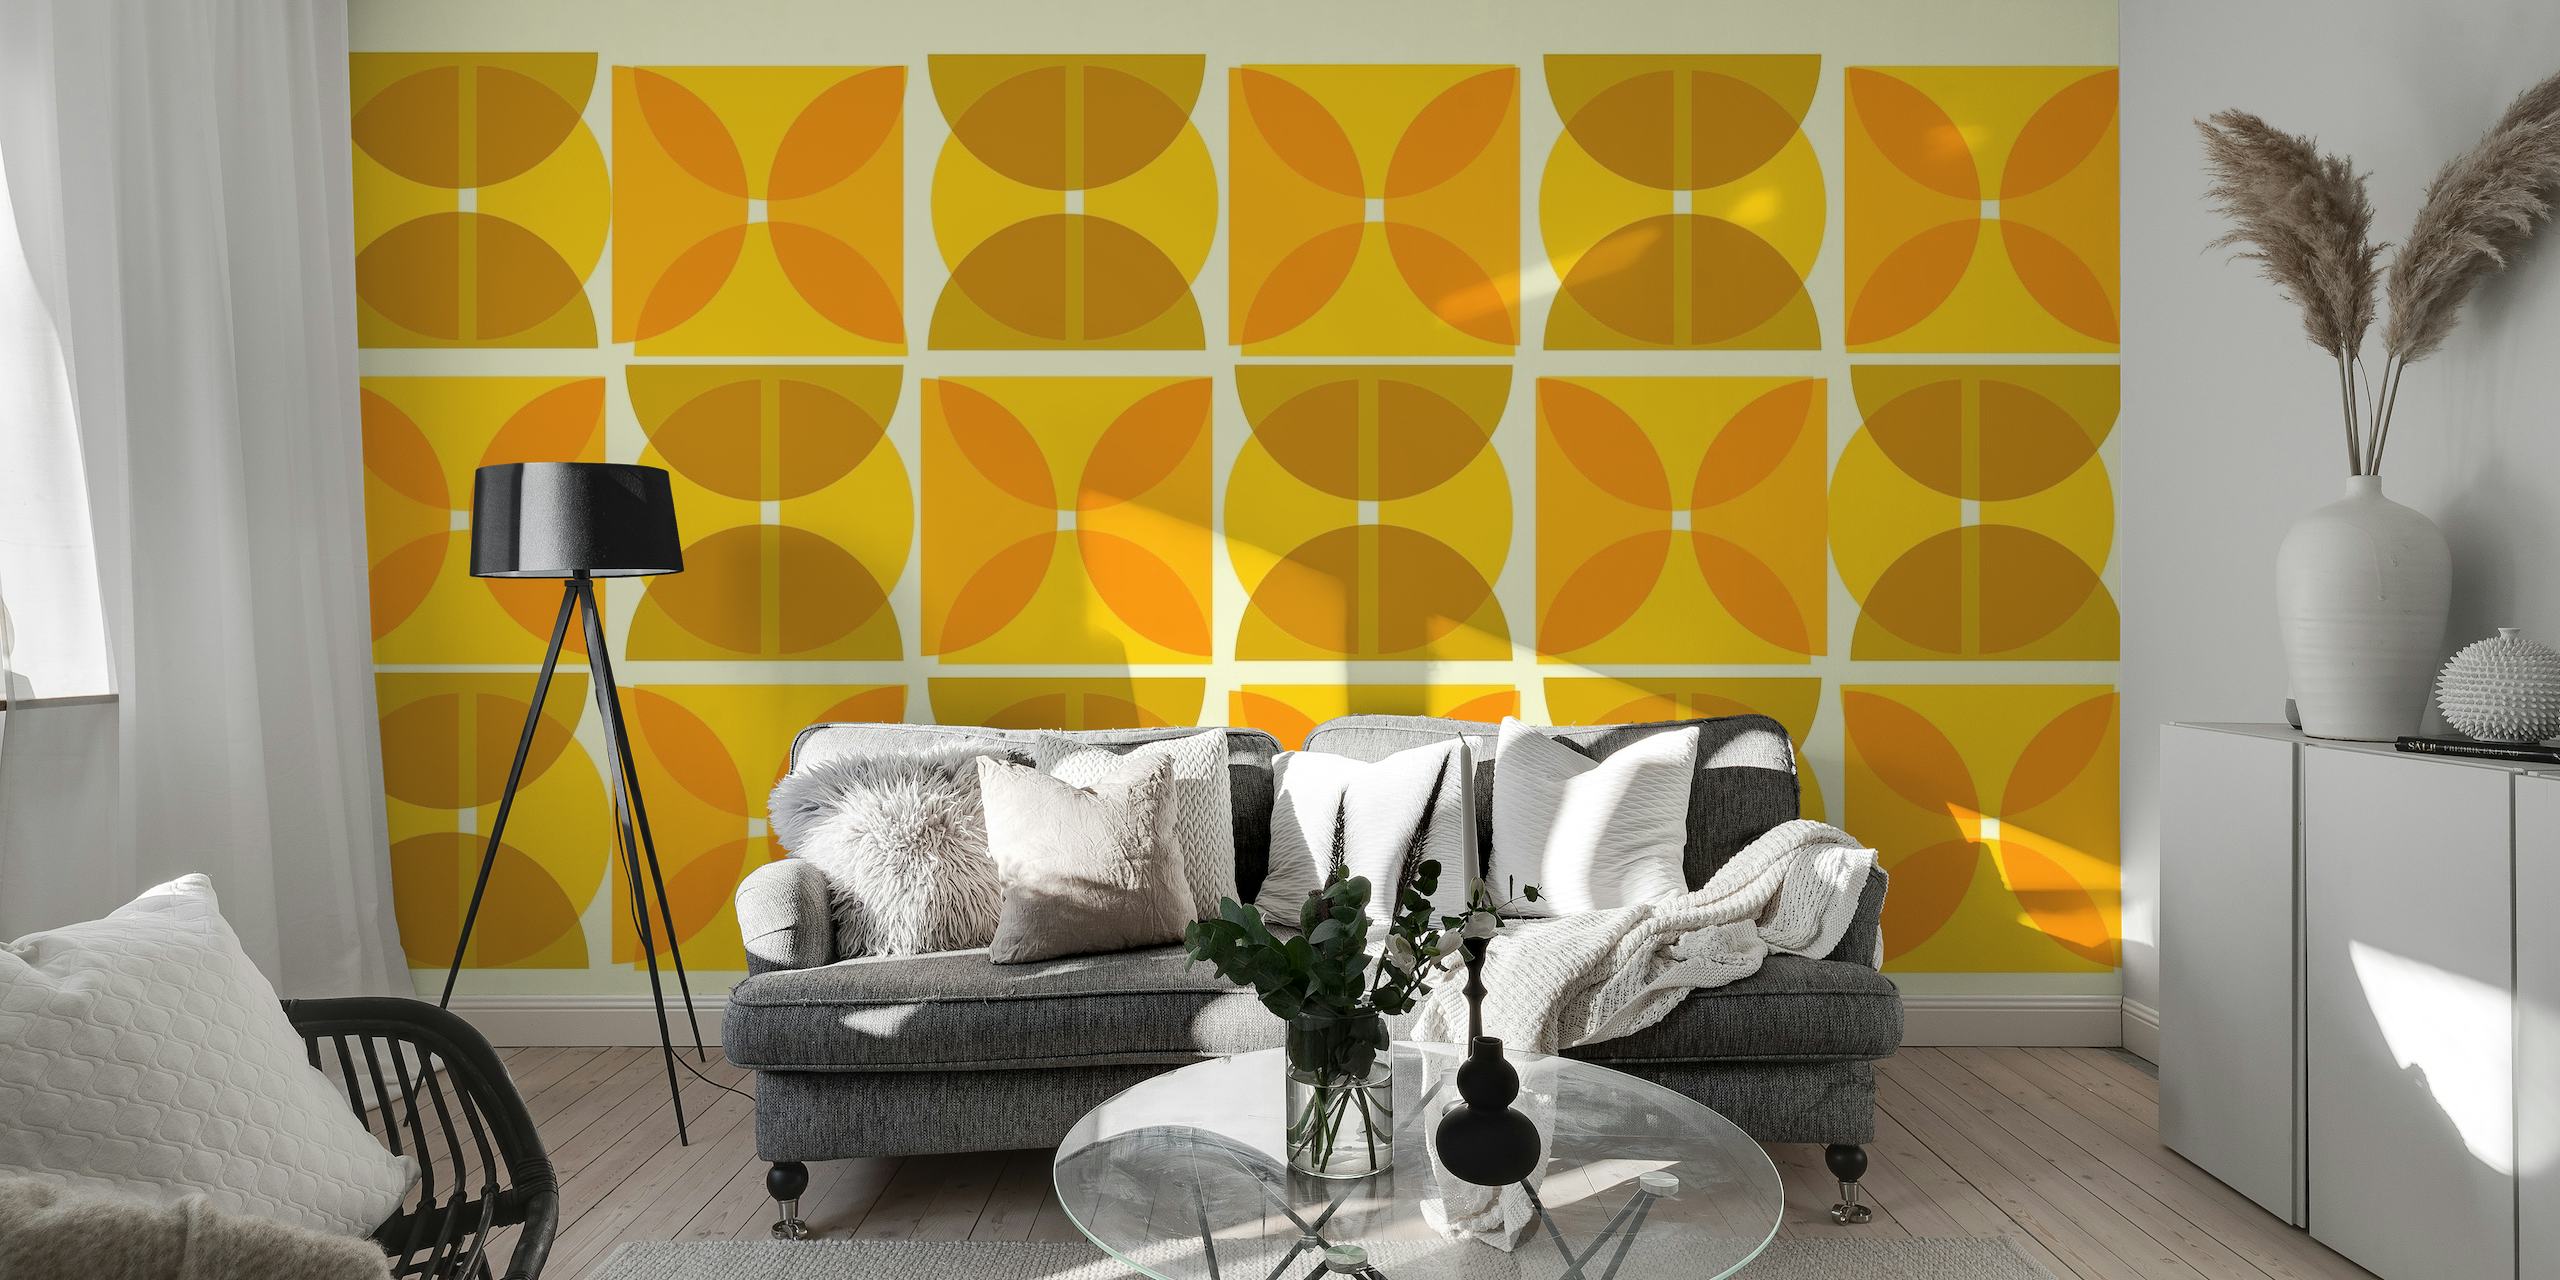 Papier peint mural d'inspiration Bauhaus avec des formes géométriques abstraites dans des tons jaunes et marron